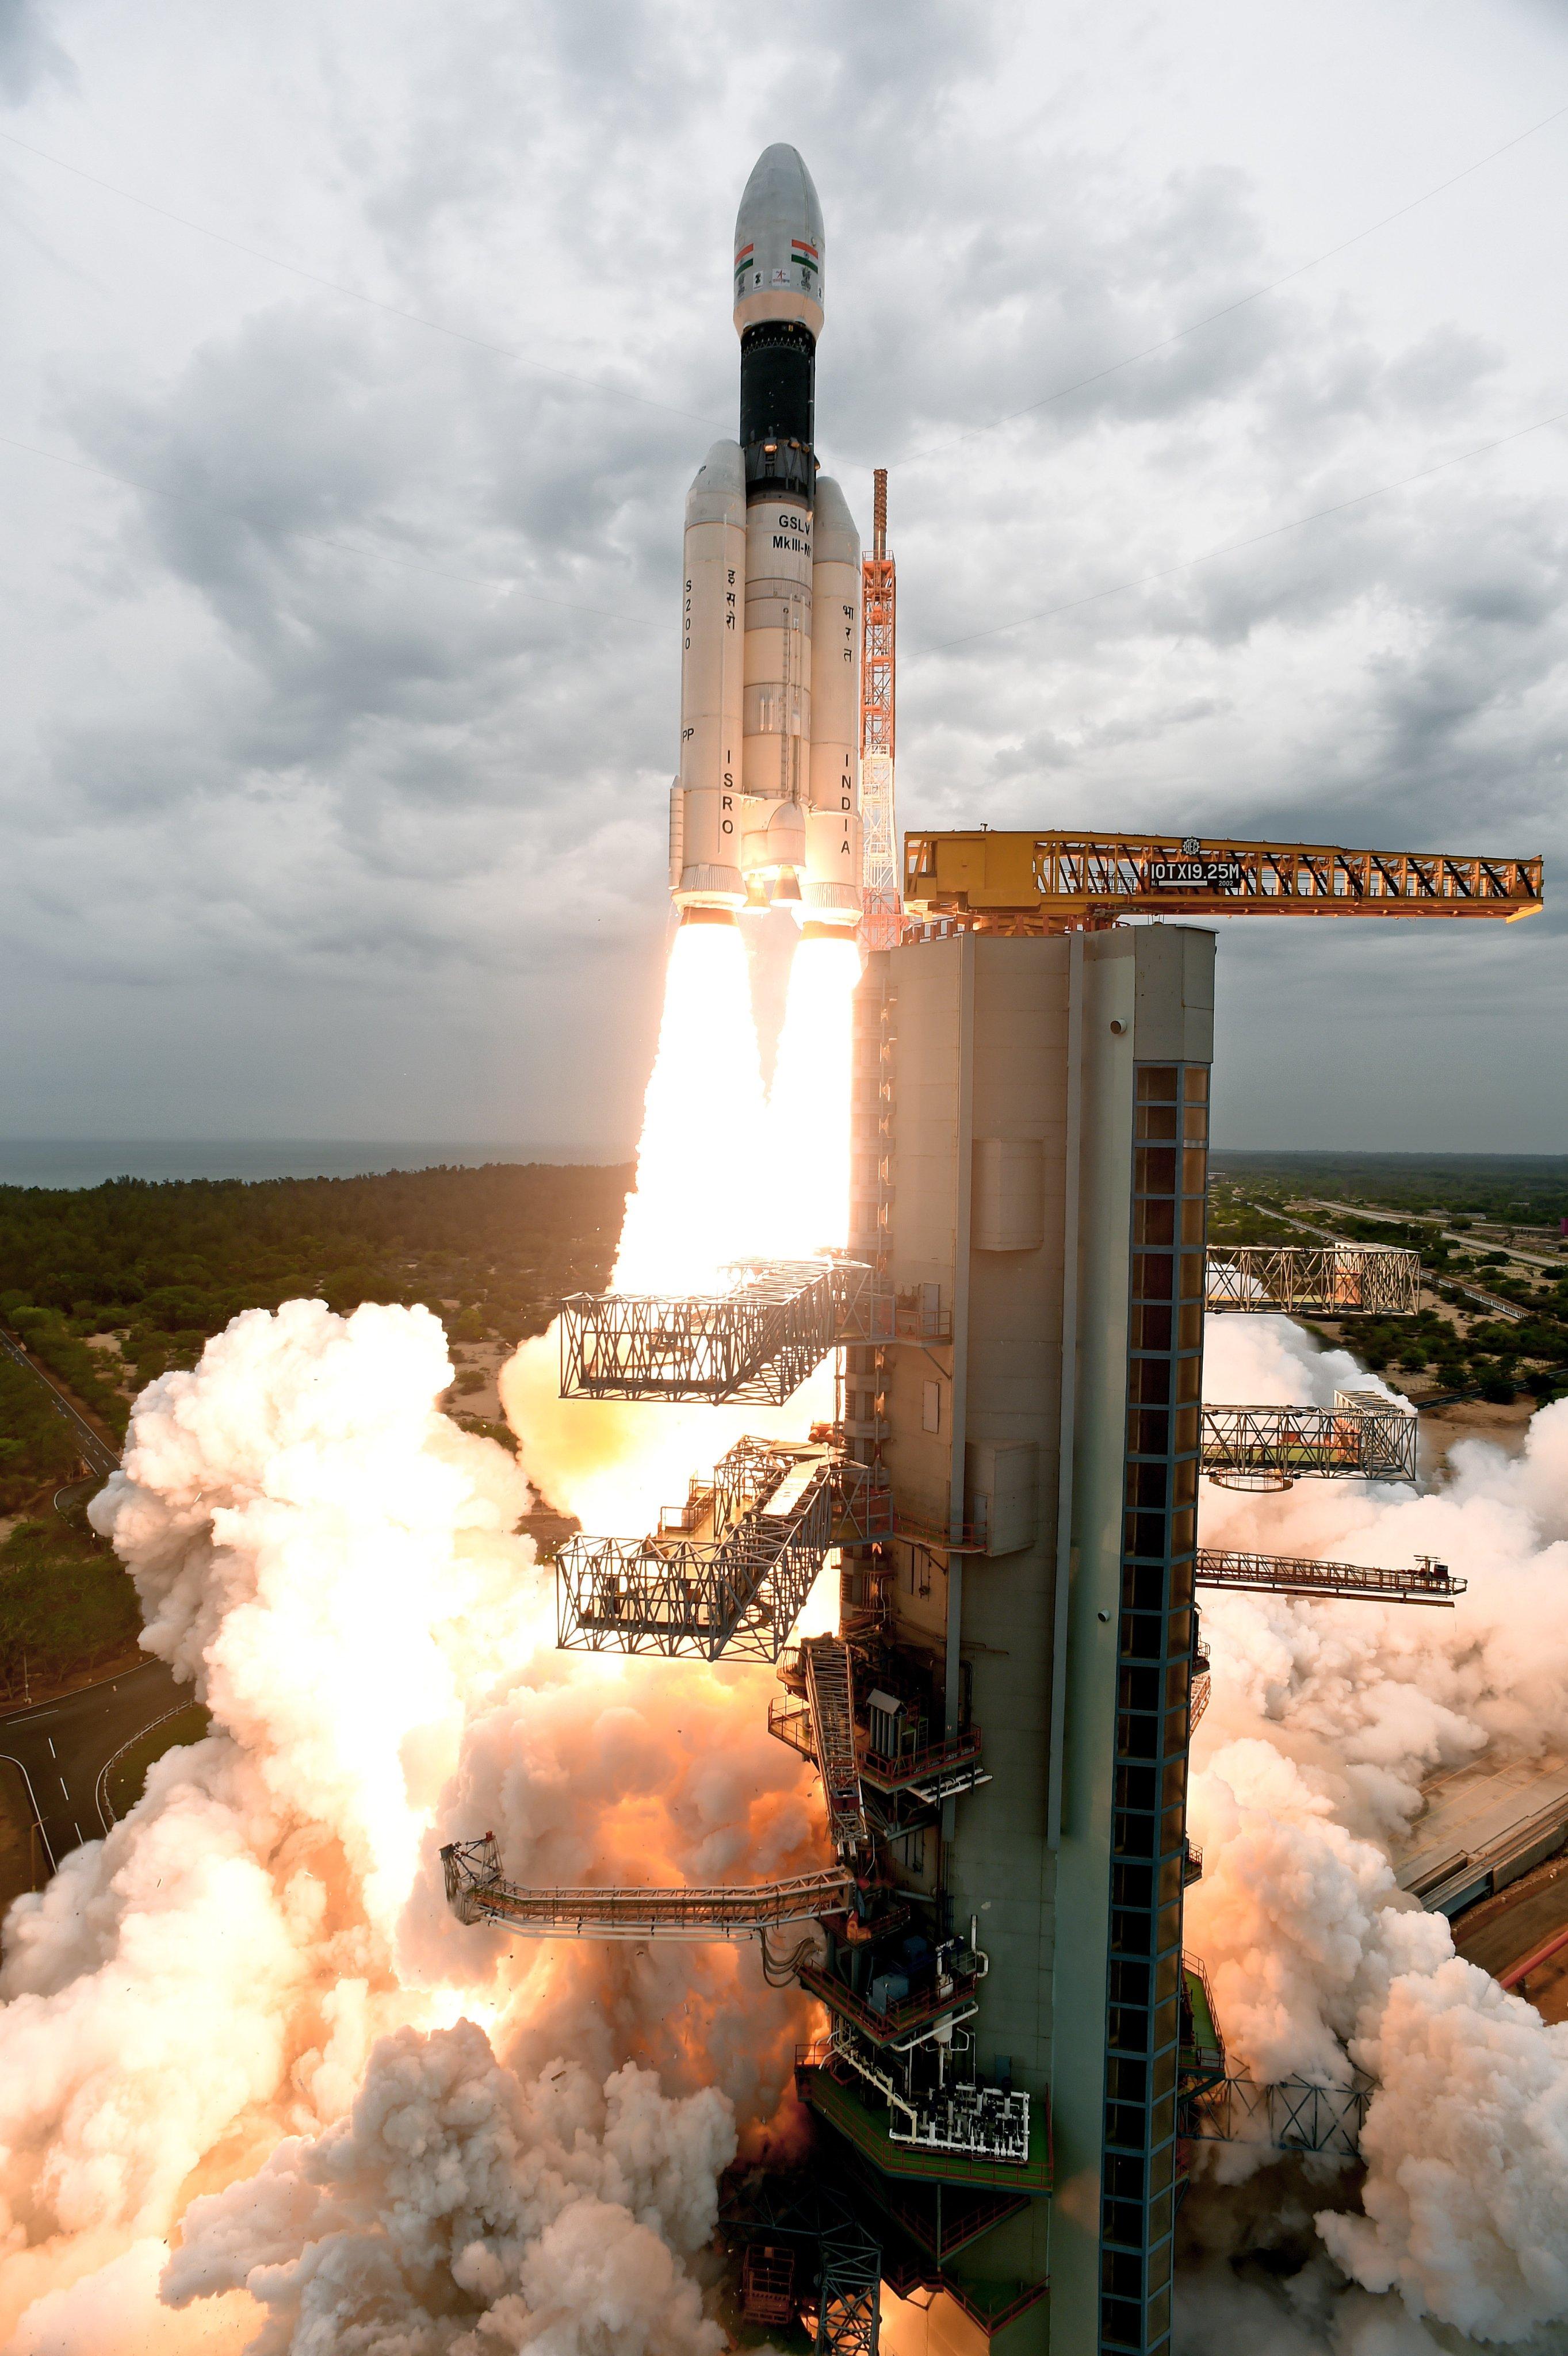 太空精酿 的想法: 印度于昨天完成了年度首次火箭发射,pslv… 